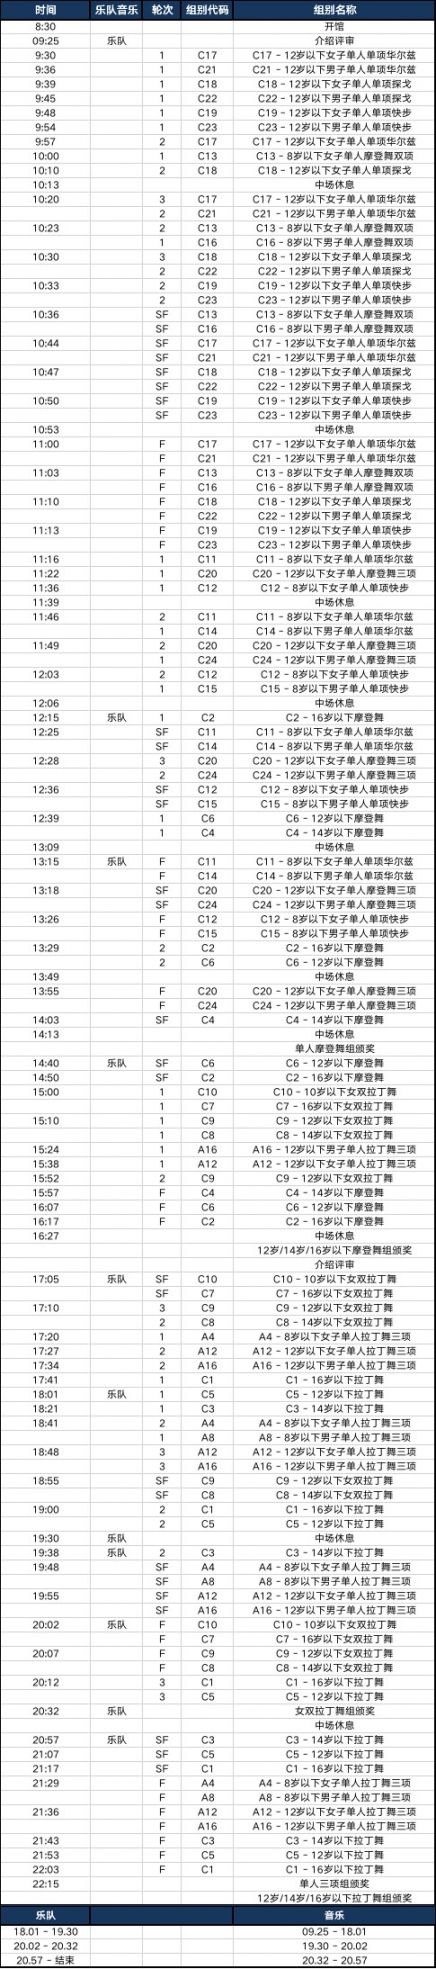 2019上海黑池舞蹈节比赛日程表信息一览